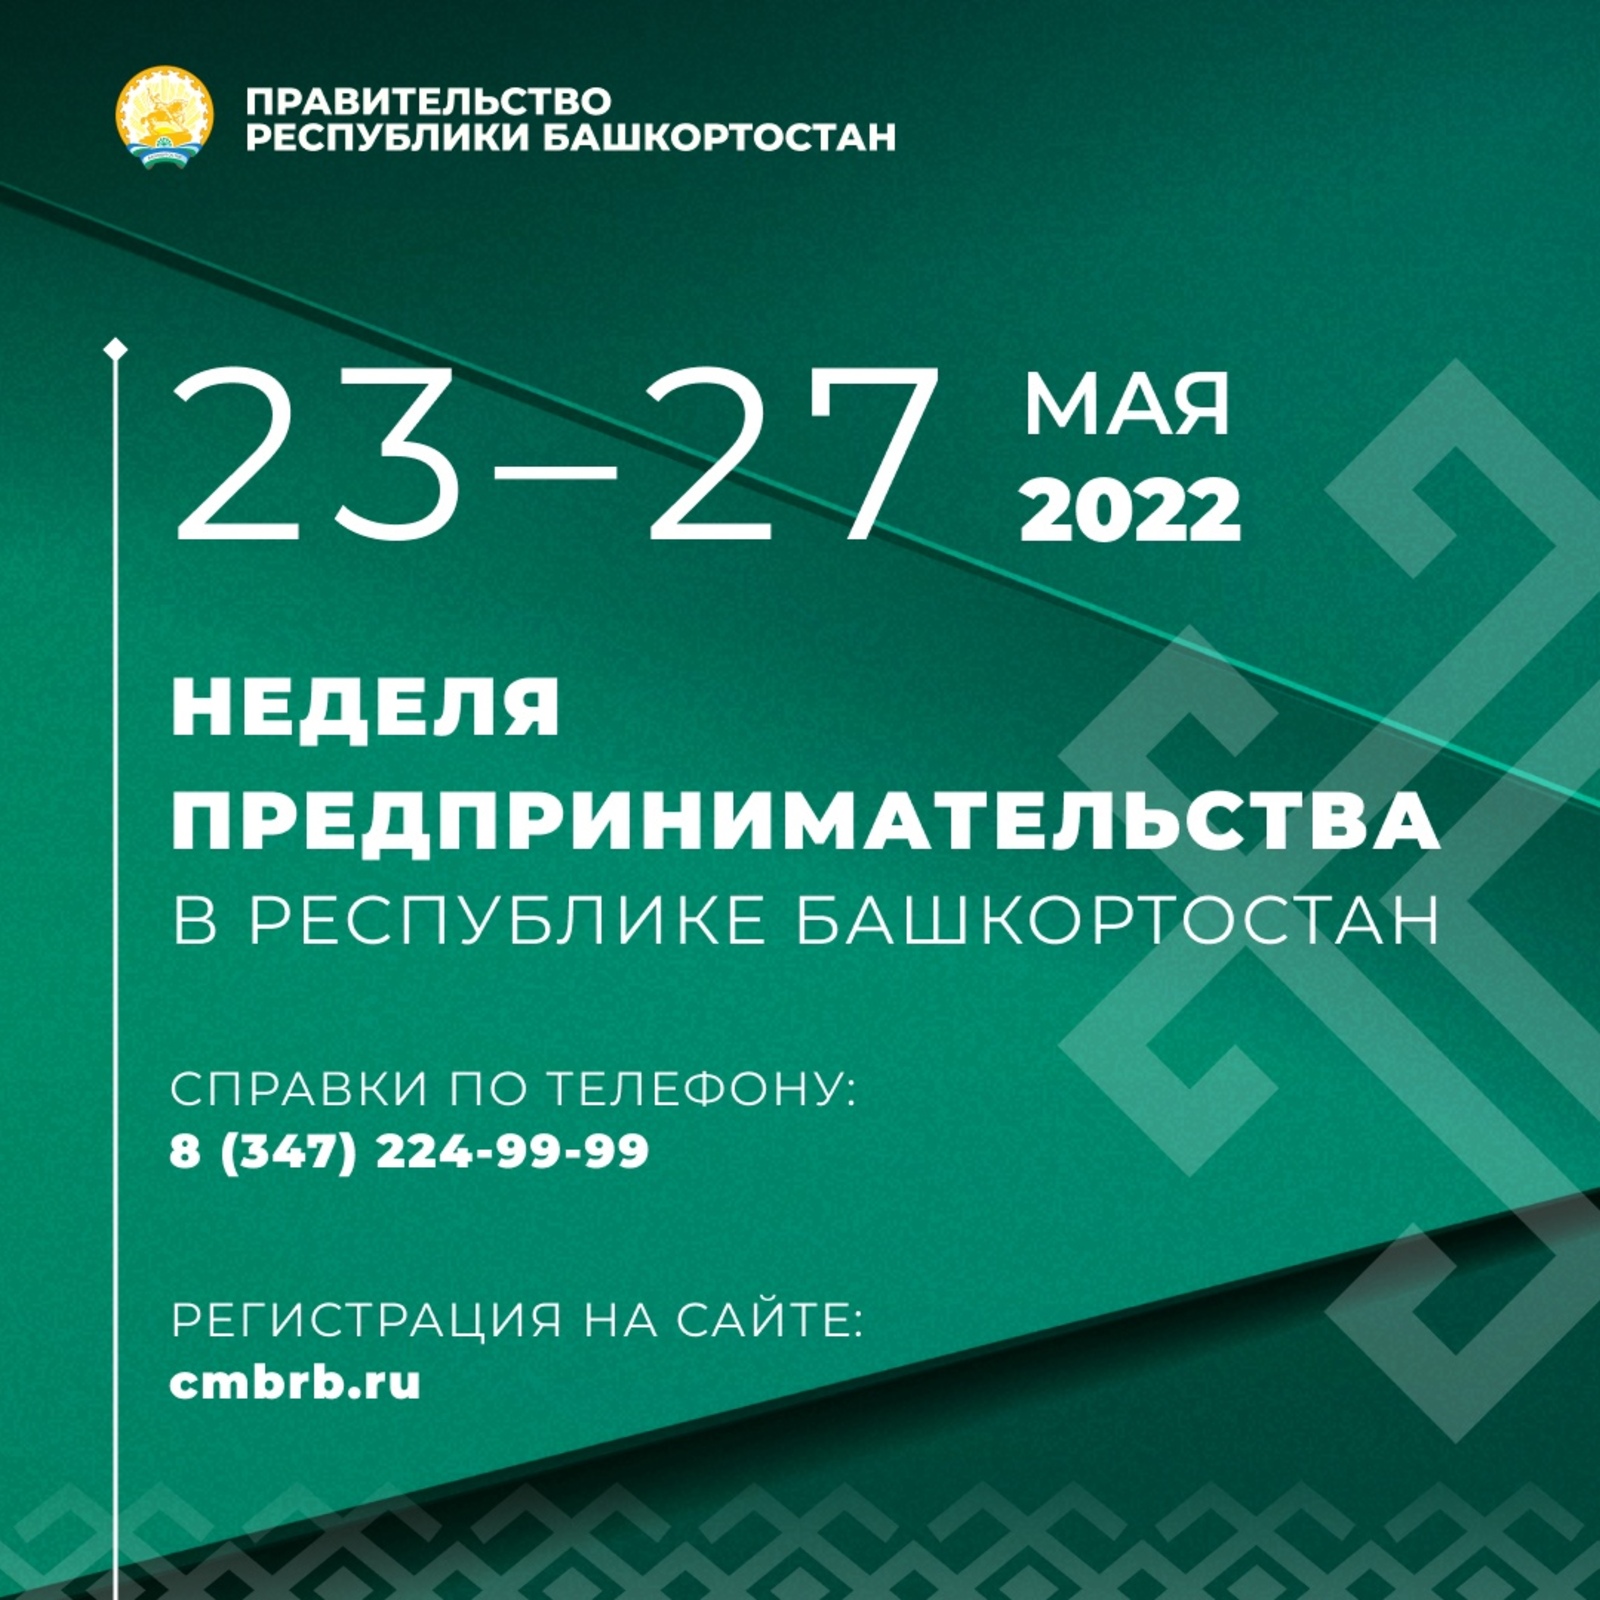 Неделя предпринимательства в Башкортостане пройдет с 23 по 27 мая